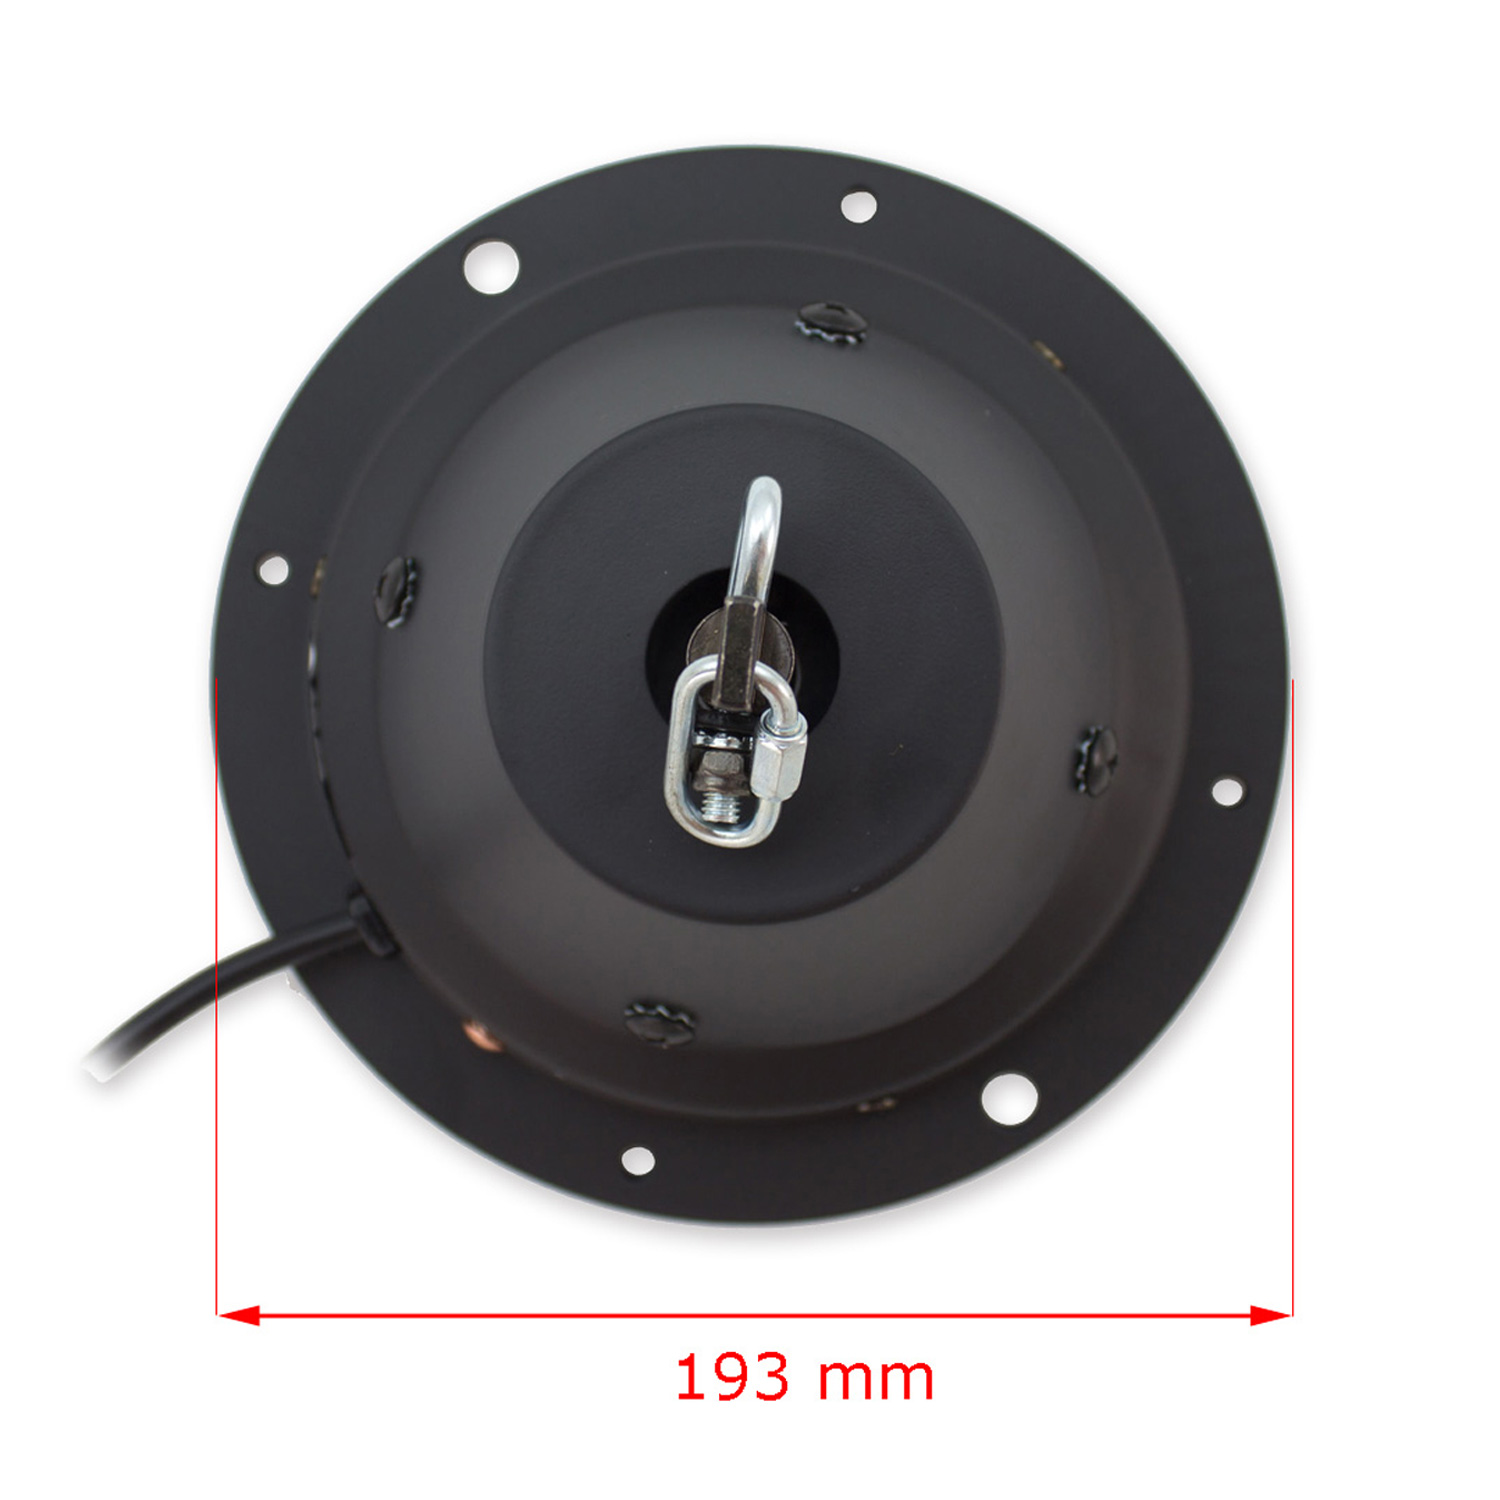 Spiegelkugel Motor Discokugel bis 50cm -10kg - DMX Drehmotor für Diskokugel